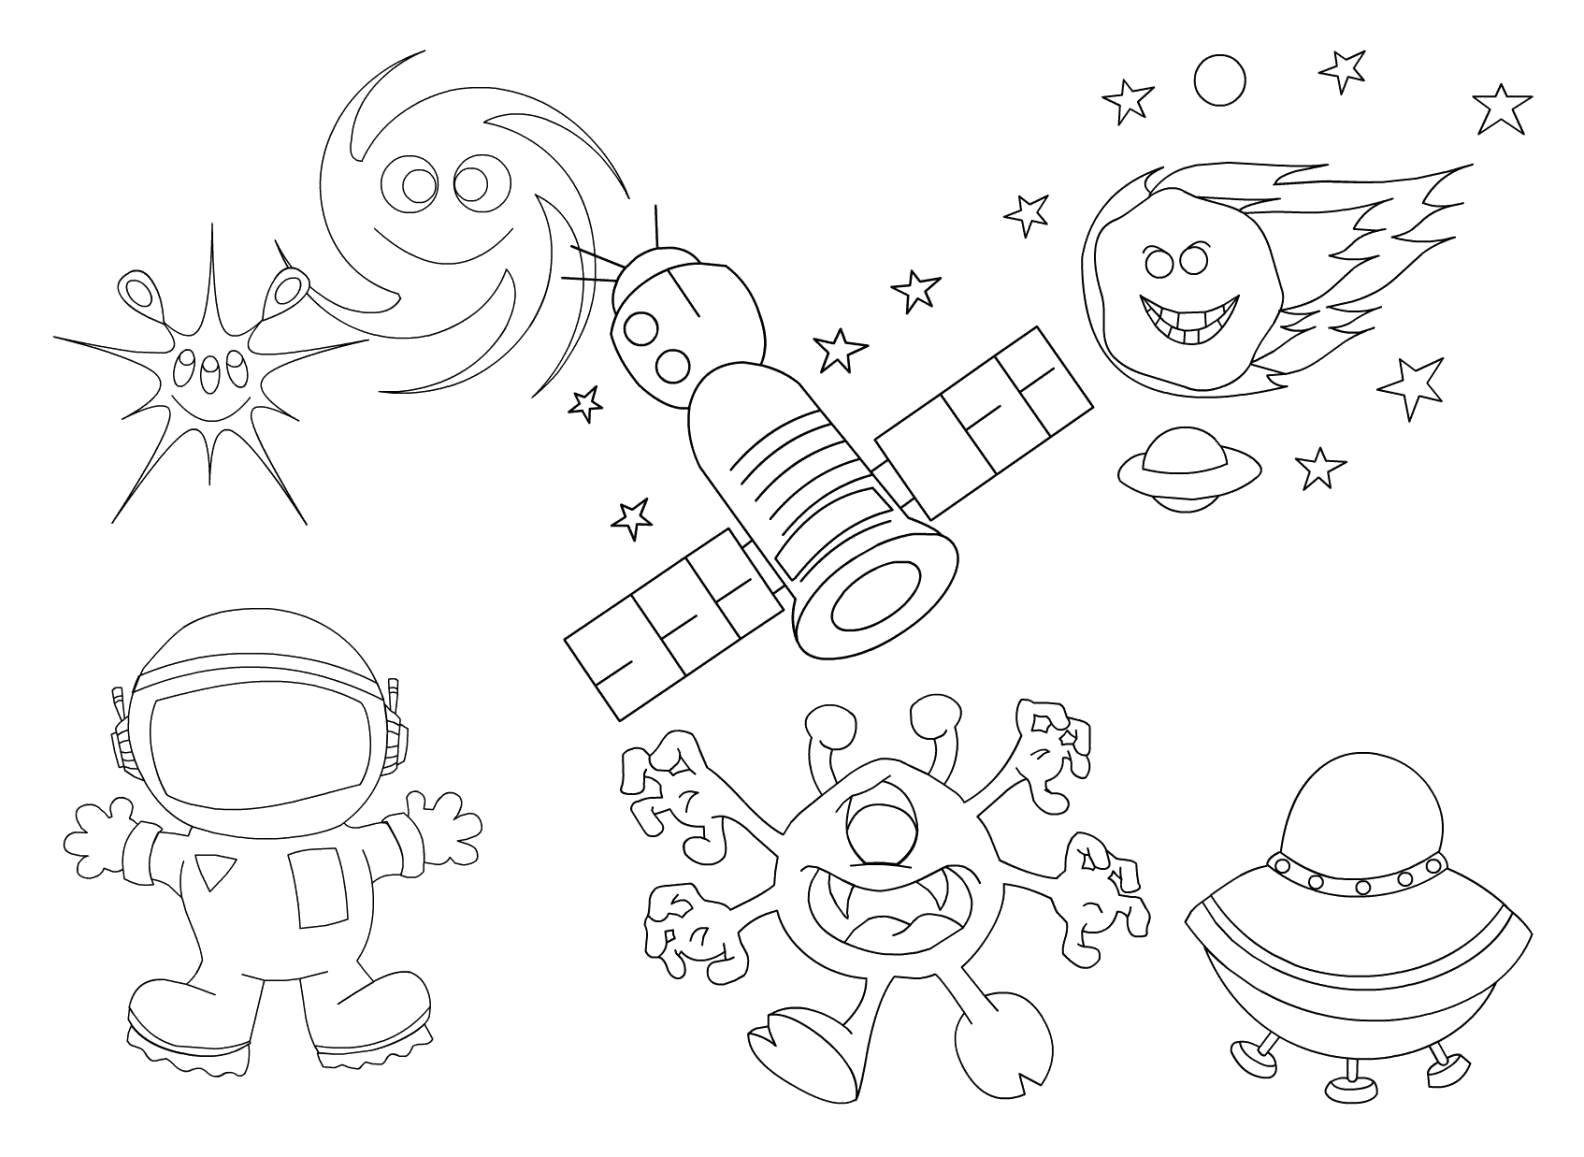 Название: Раскраска Космонавт, звезды, спутник, инопланетянин, космический корабль, комета в космосе. Категория: космос. Теги: Космос, планета, Вселенная, Галактика, космонавт, инопланетянин, звезды.